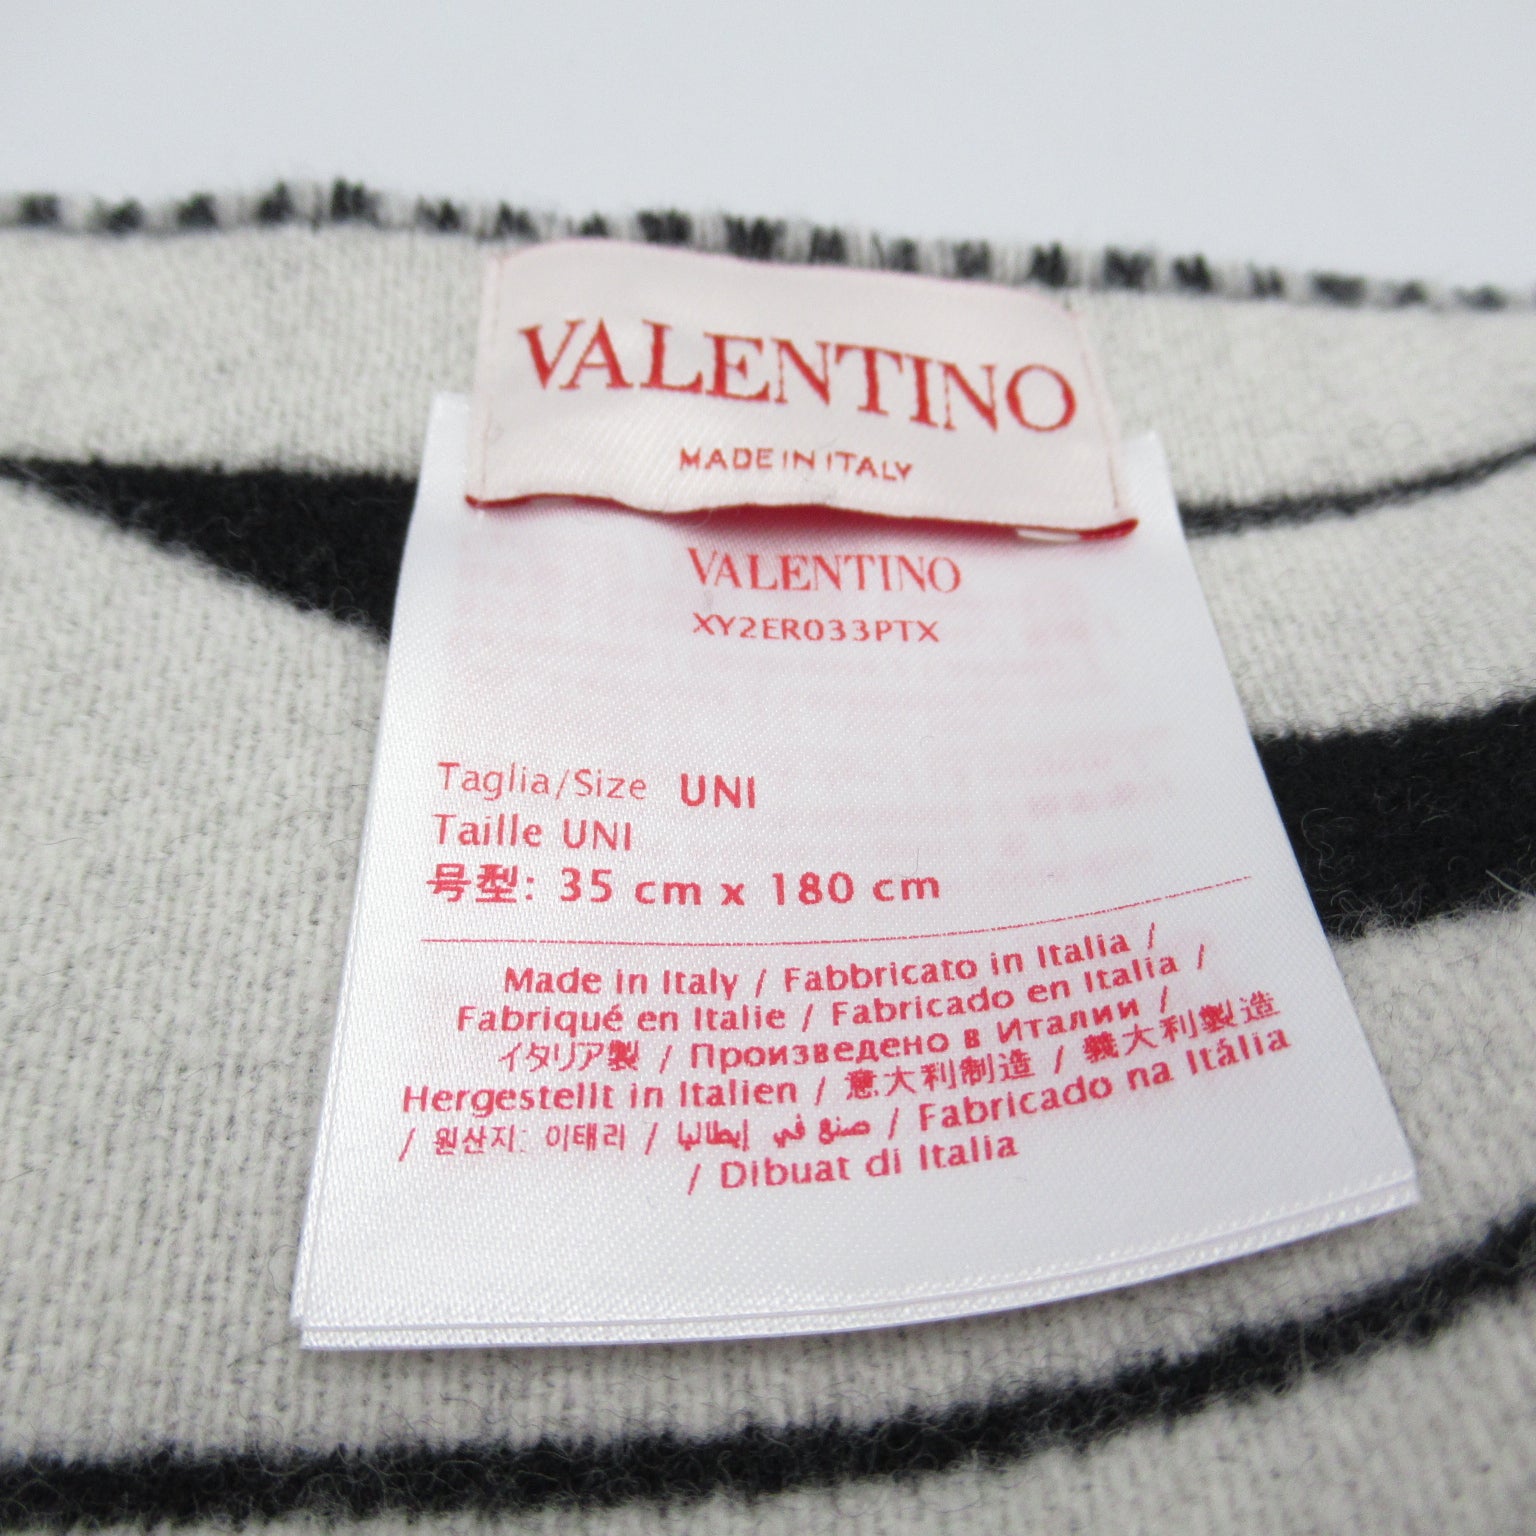 Valentino Valentino Maffler  Wool   Black XY2ER033PTX